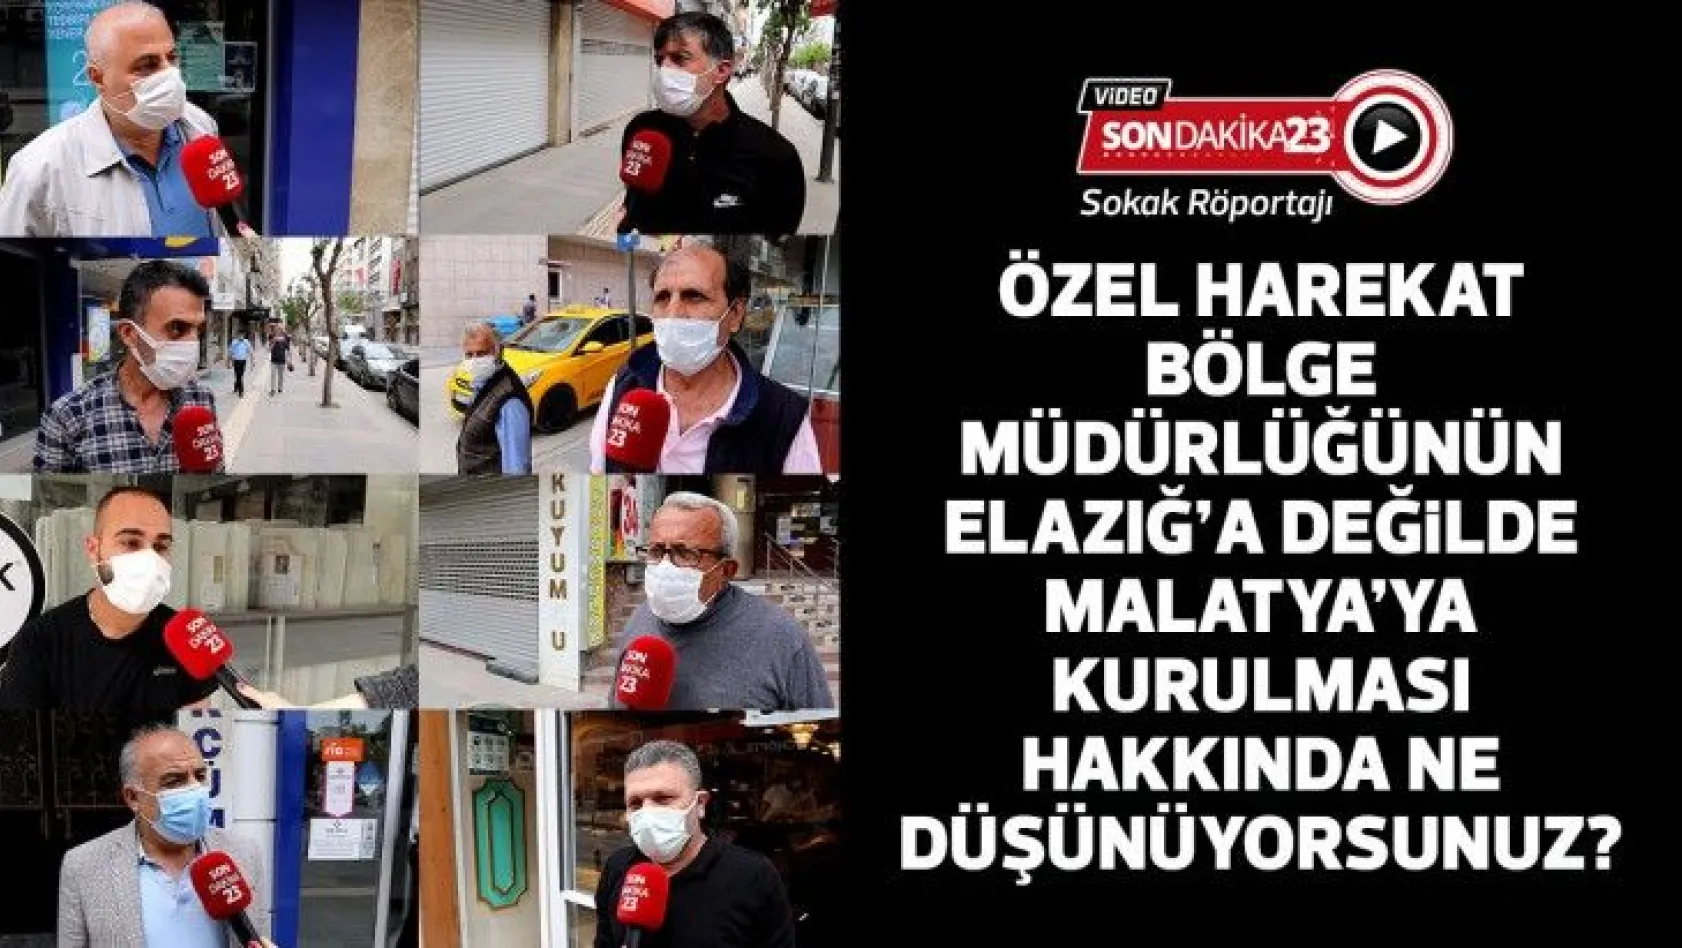 Özel Harekat Bölge Müdürlüğünün Elazığ'a değil de Malatya'ya kurulması hakkında ne düşünüyorsunuz?